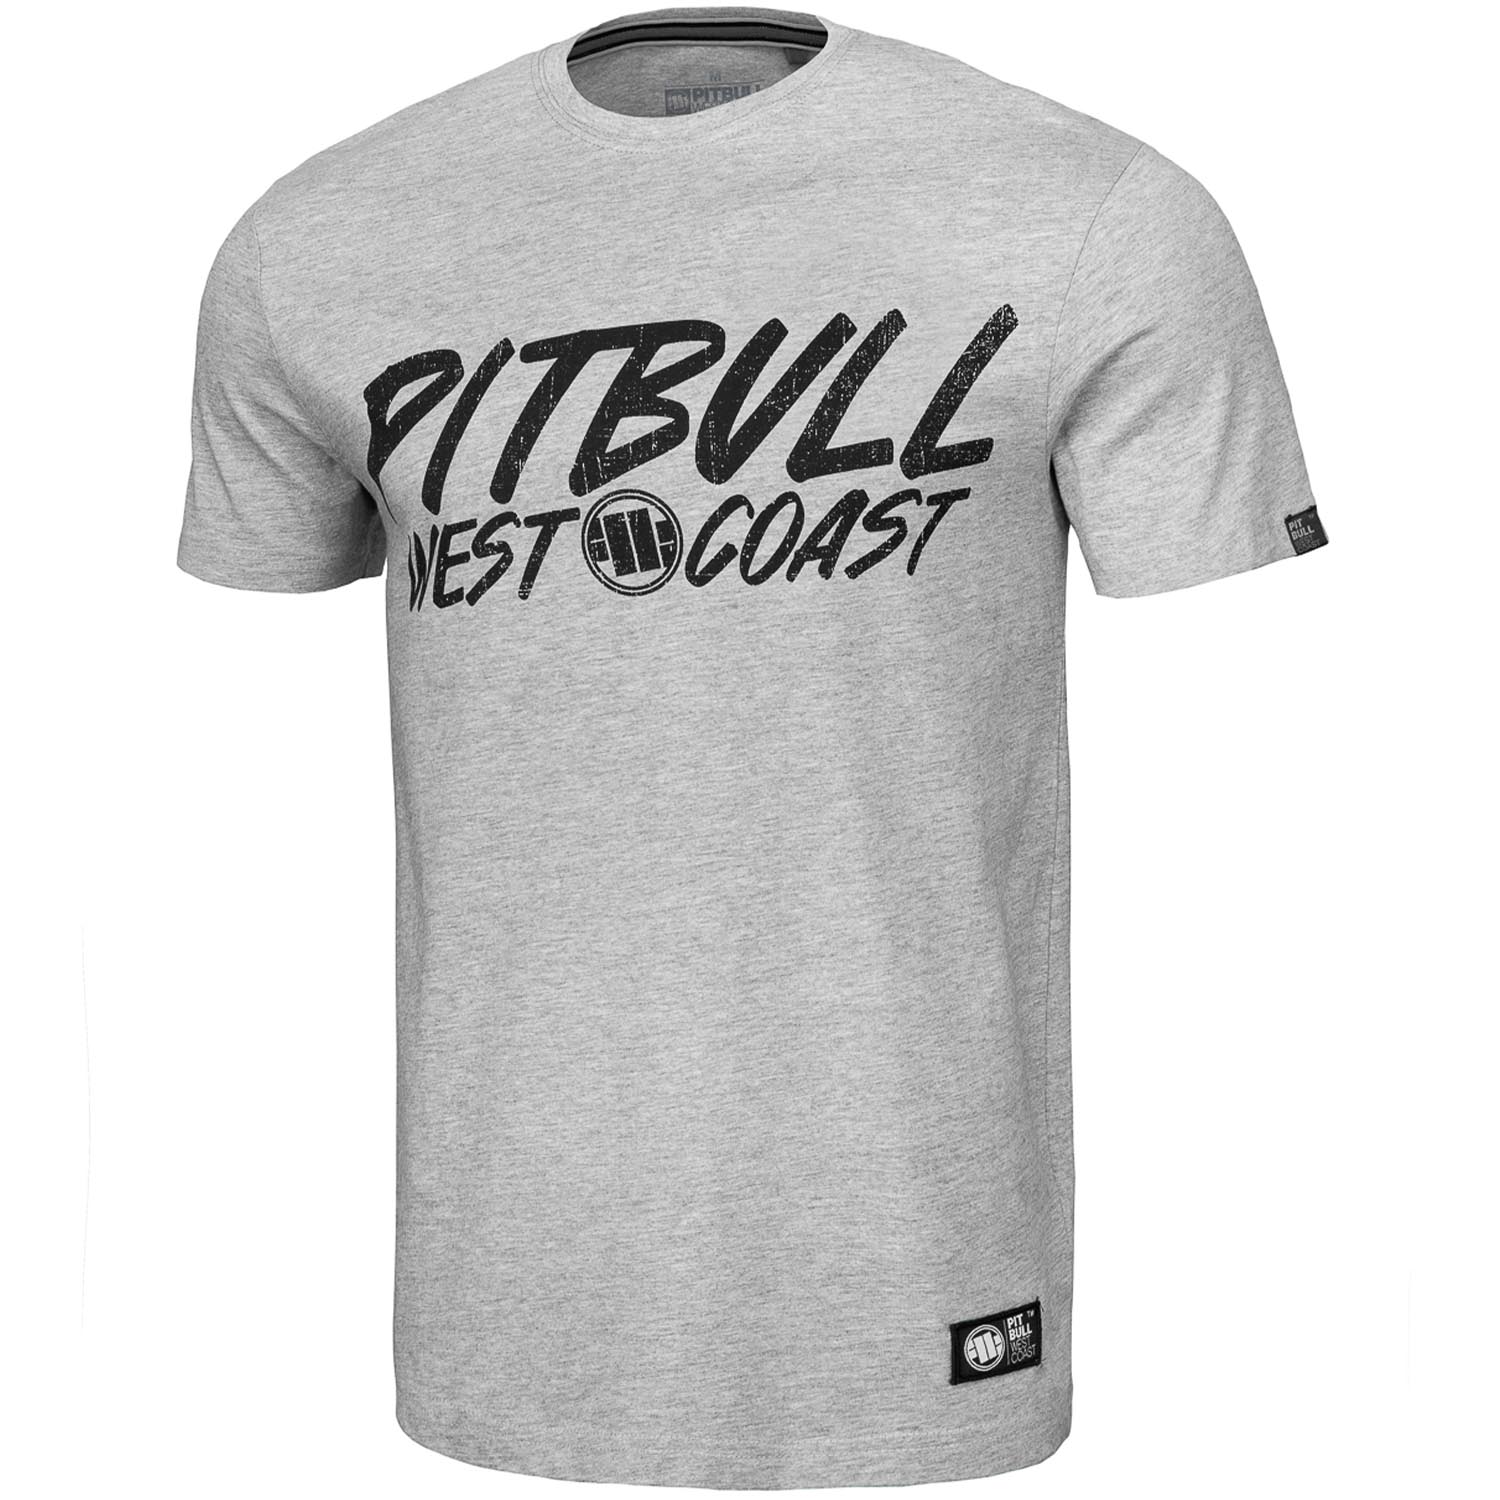 Pit Bull West Coast T-Shirt, Grey Dog, grey